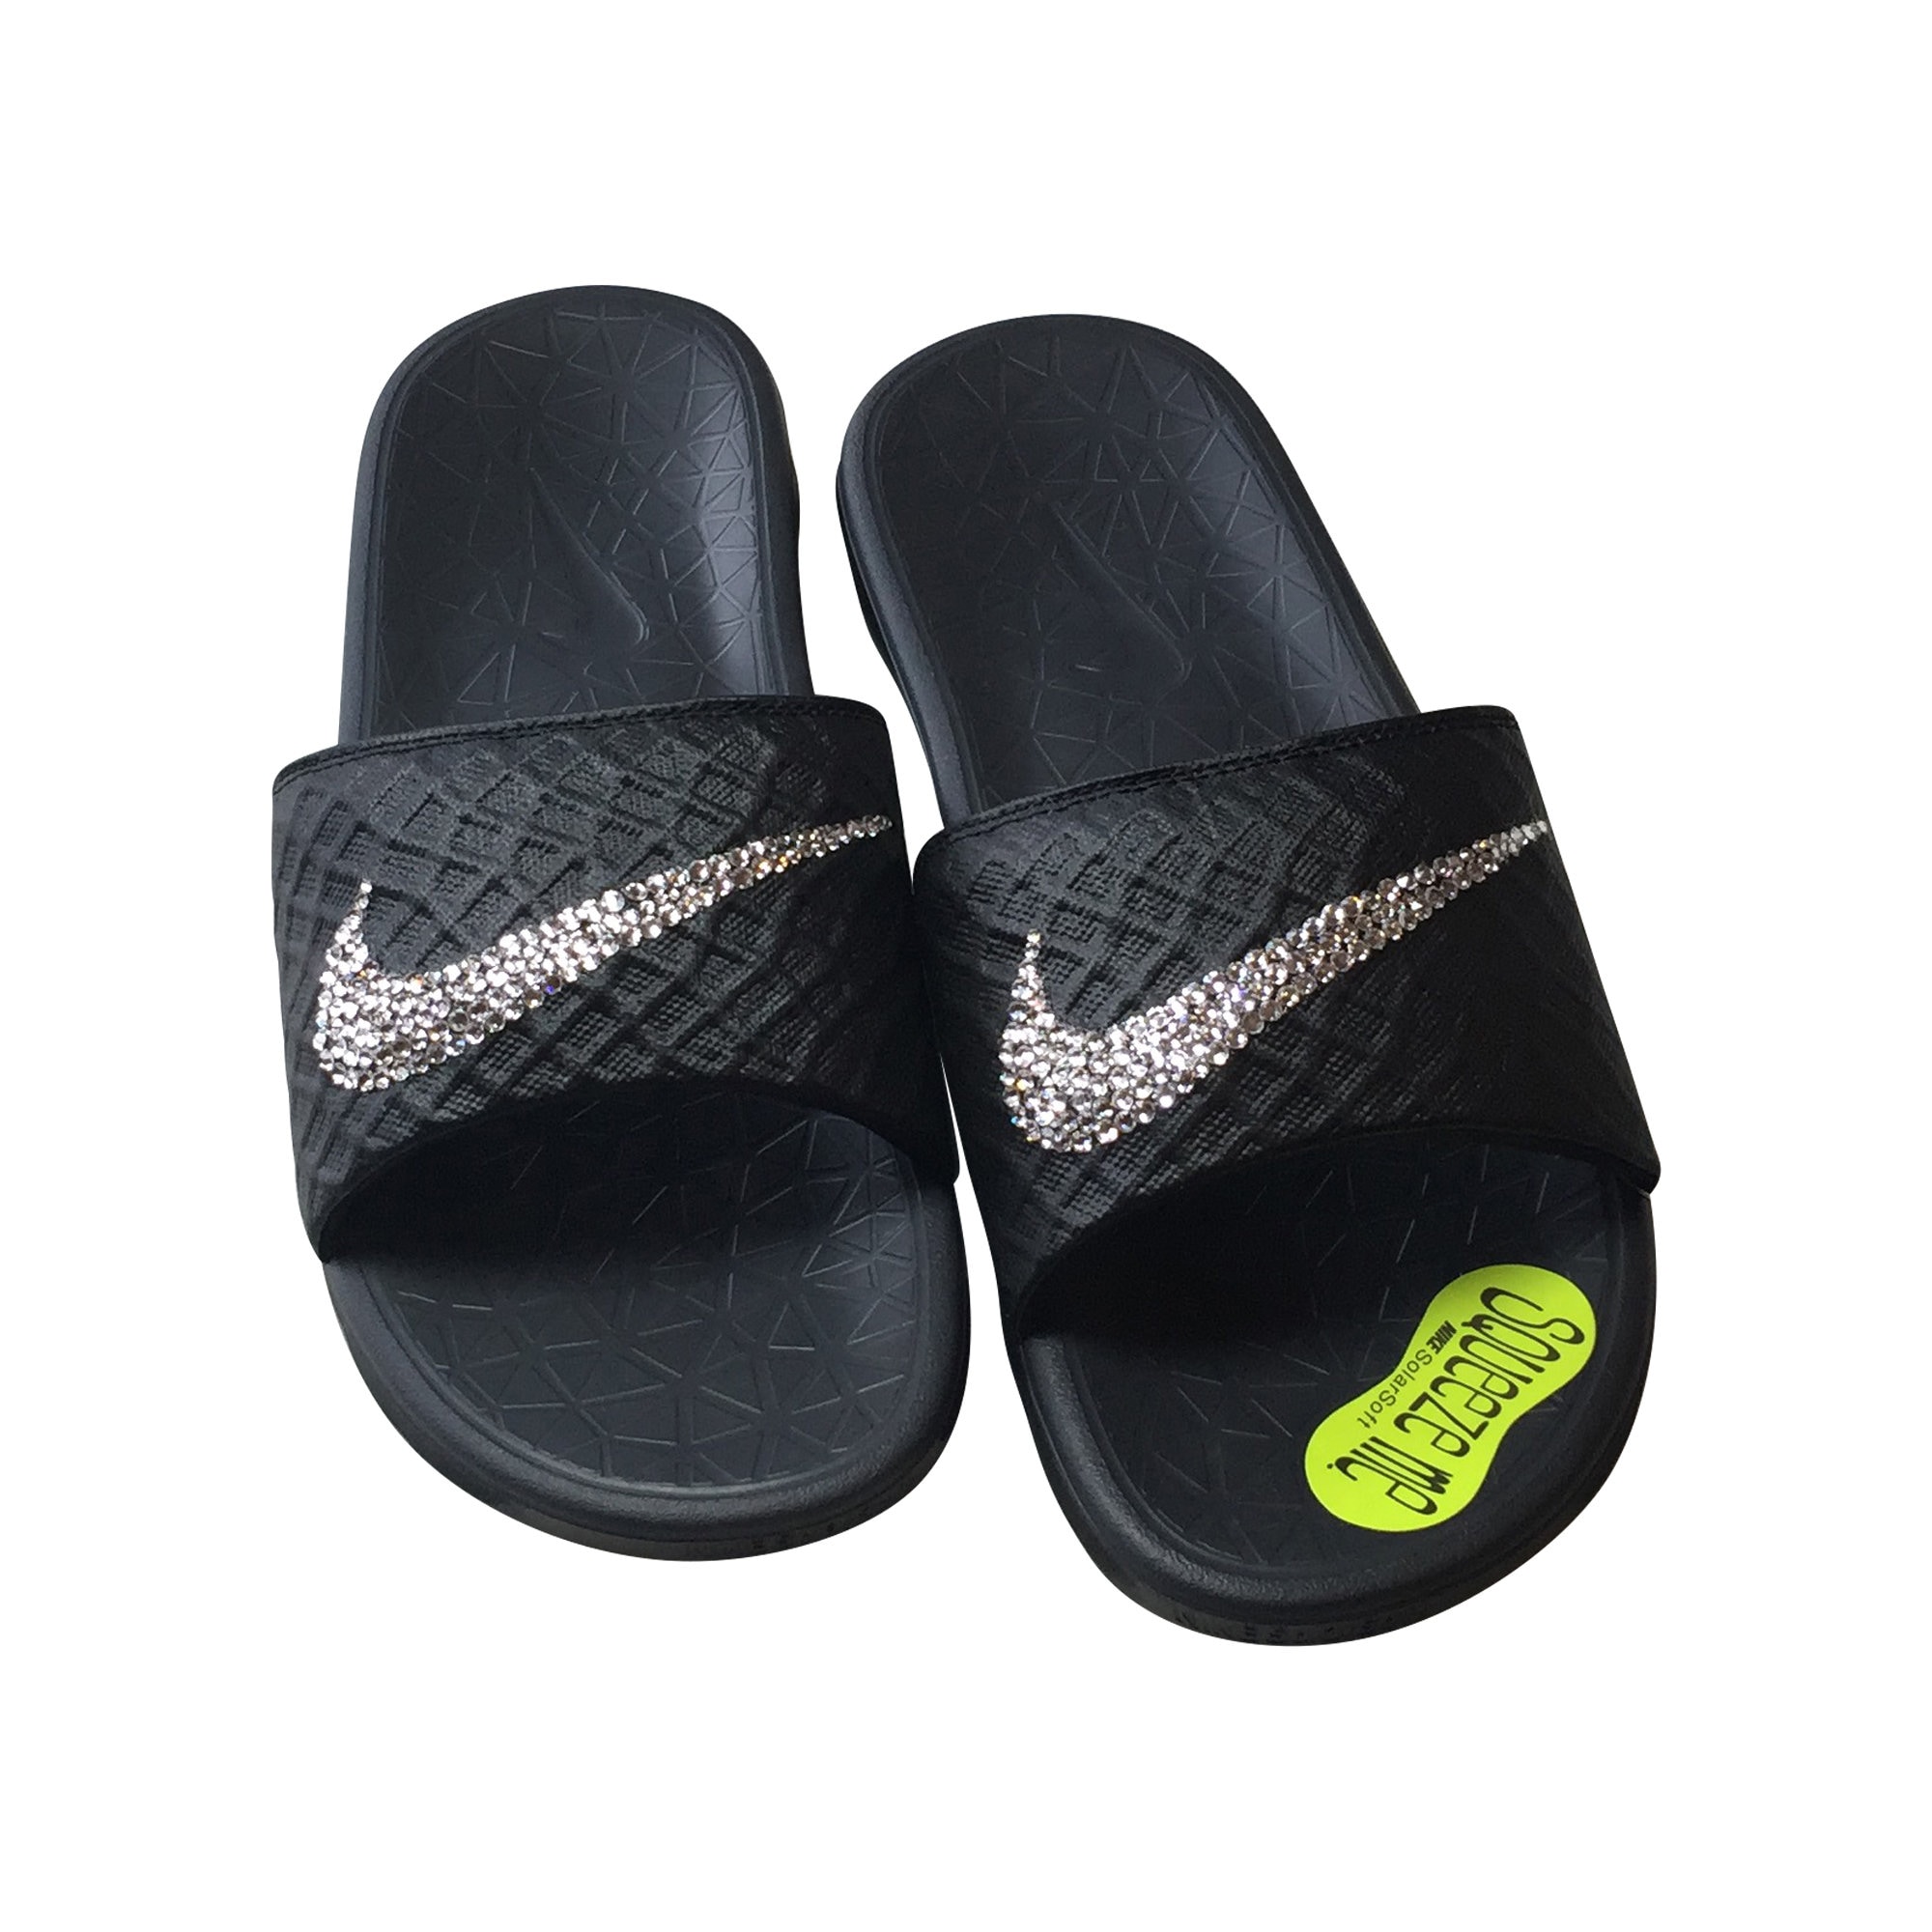 All Black Nike Benassi Solarsoft 2 Slides With Swarovski - Etsy